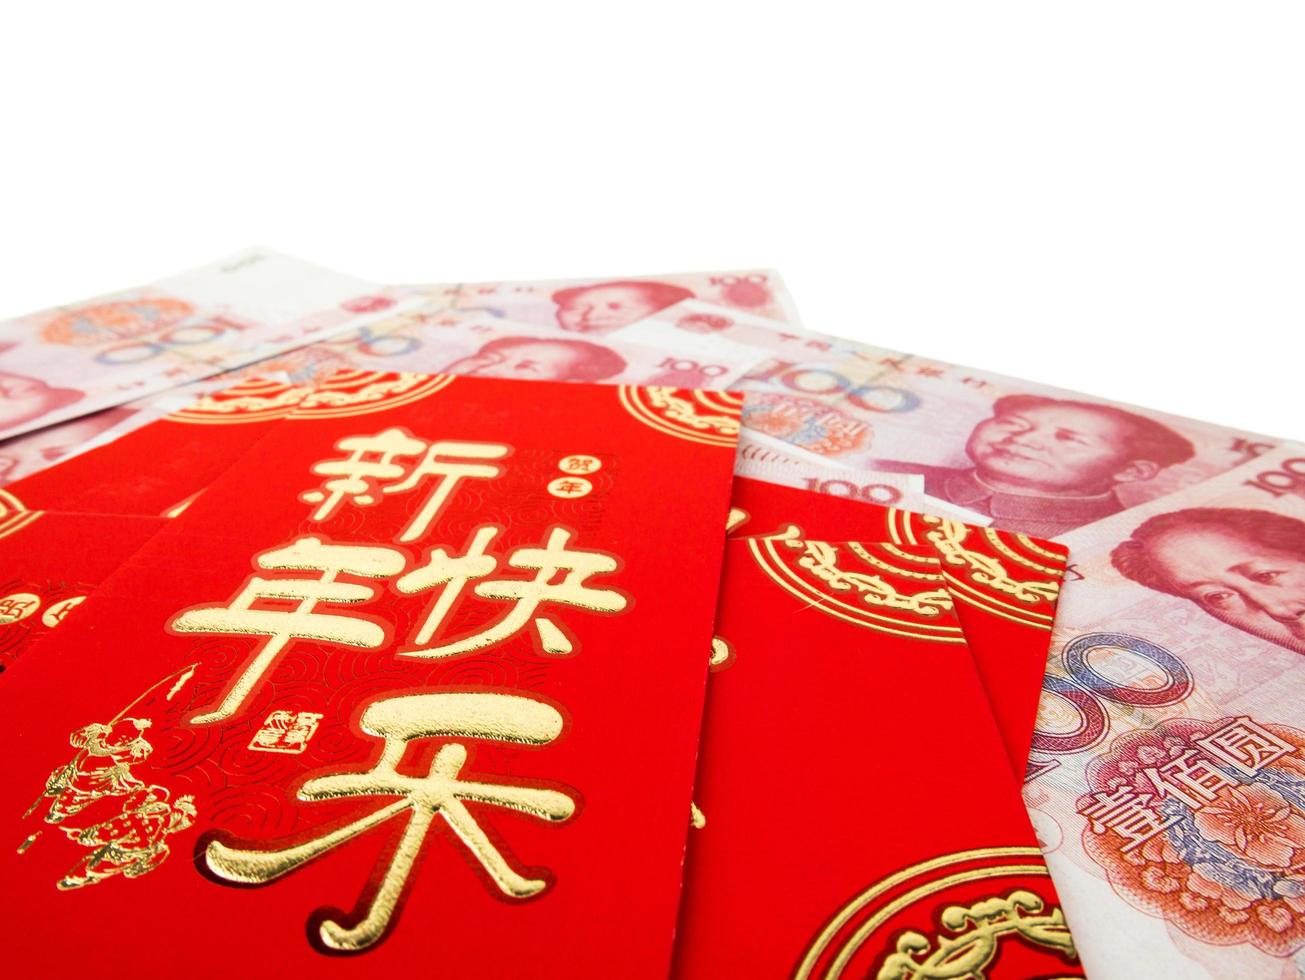 envelopes vermelhos chineses sobre dinheiro chinês pilha de notas de cem yuans, isolada no fundo branco. texto chinês no envelope significa feliz ano novo chinês foto